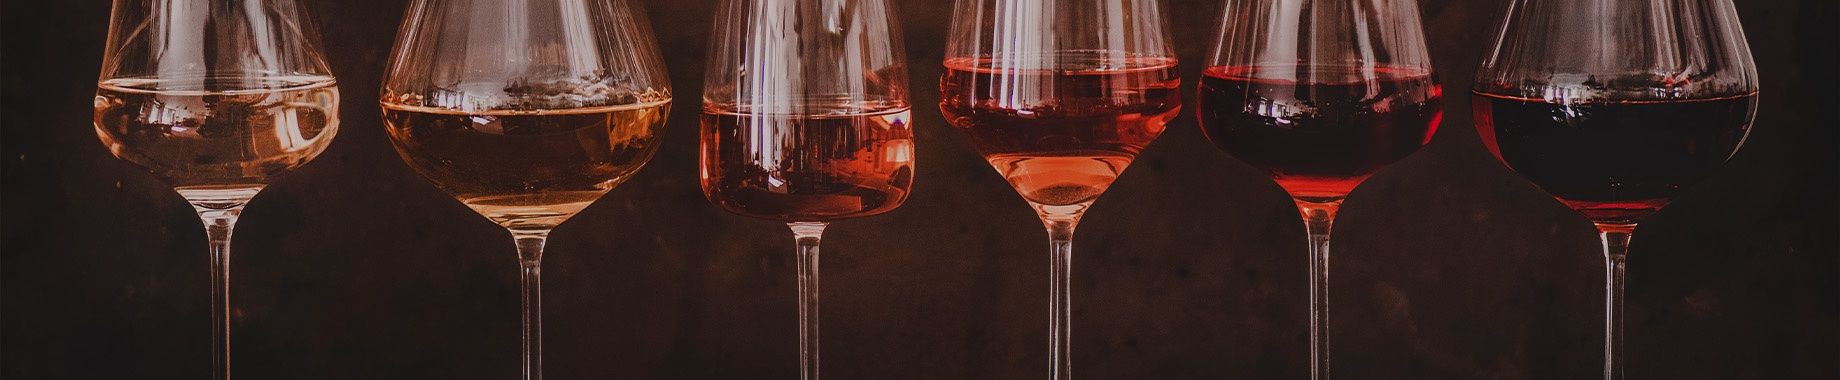 Verschiedene Weine in Weingläsern